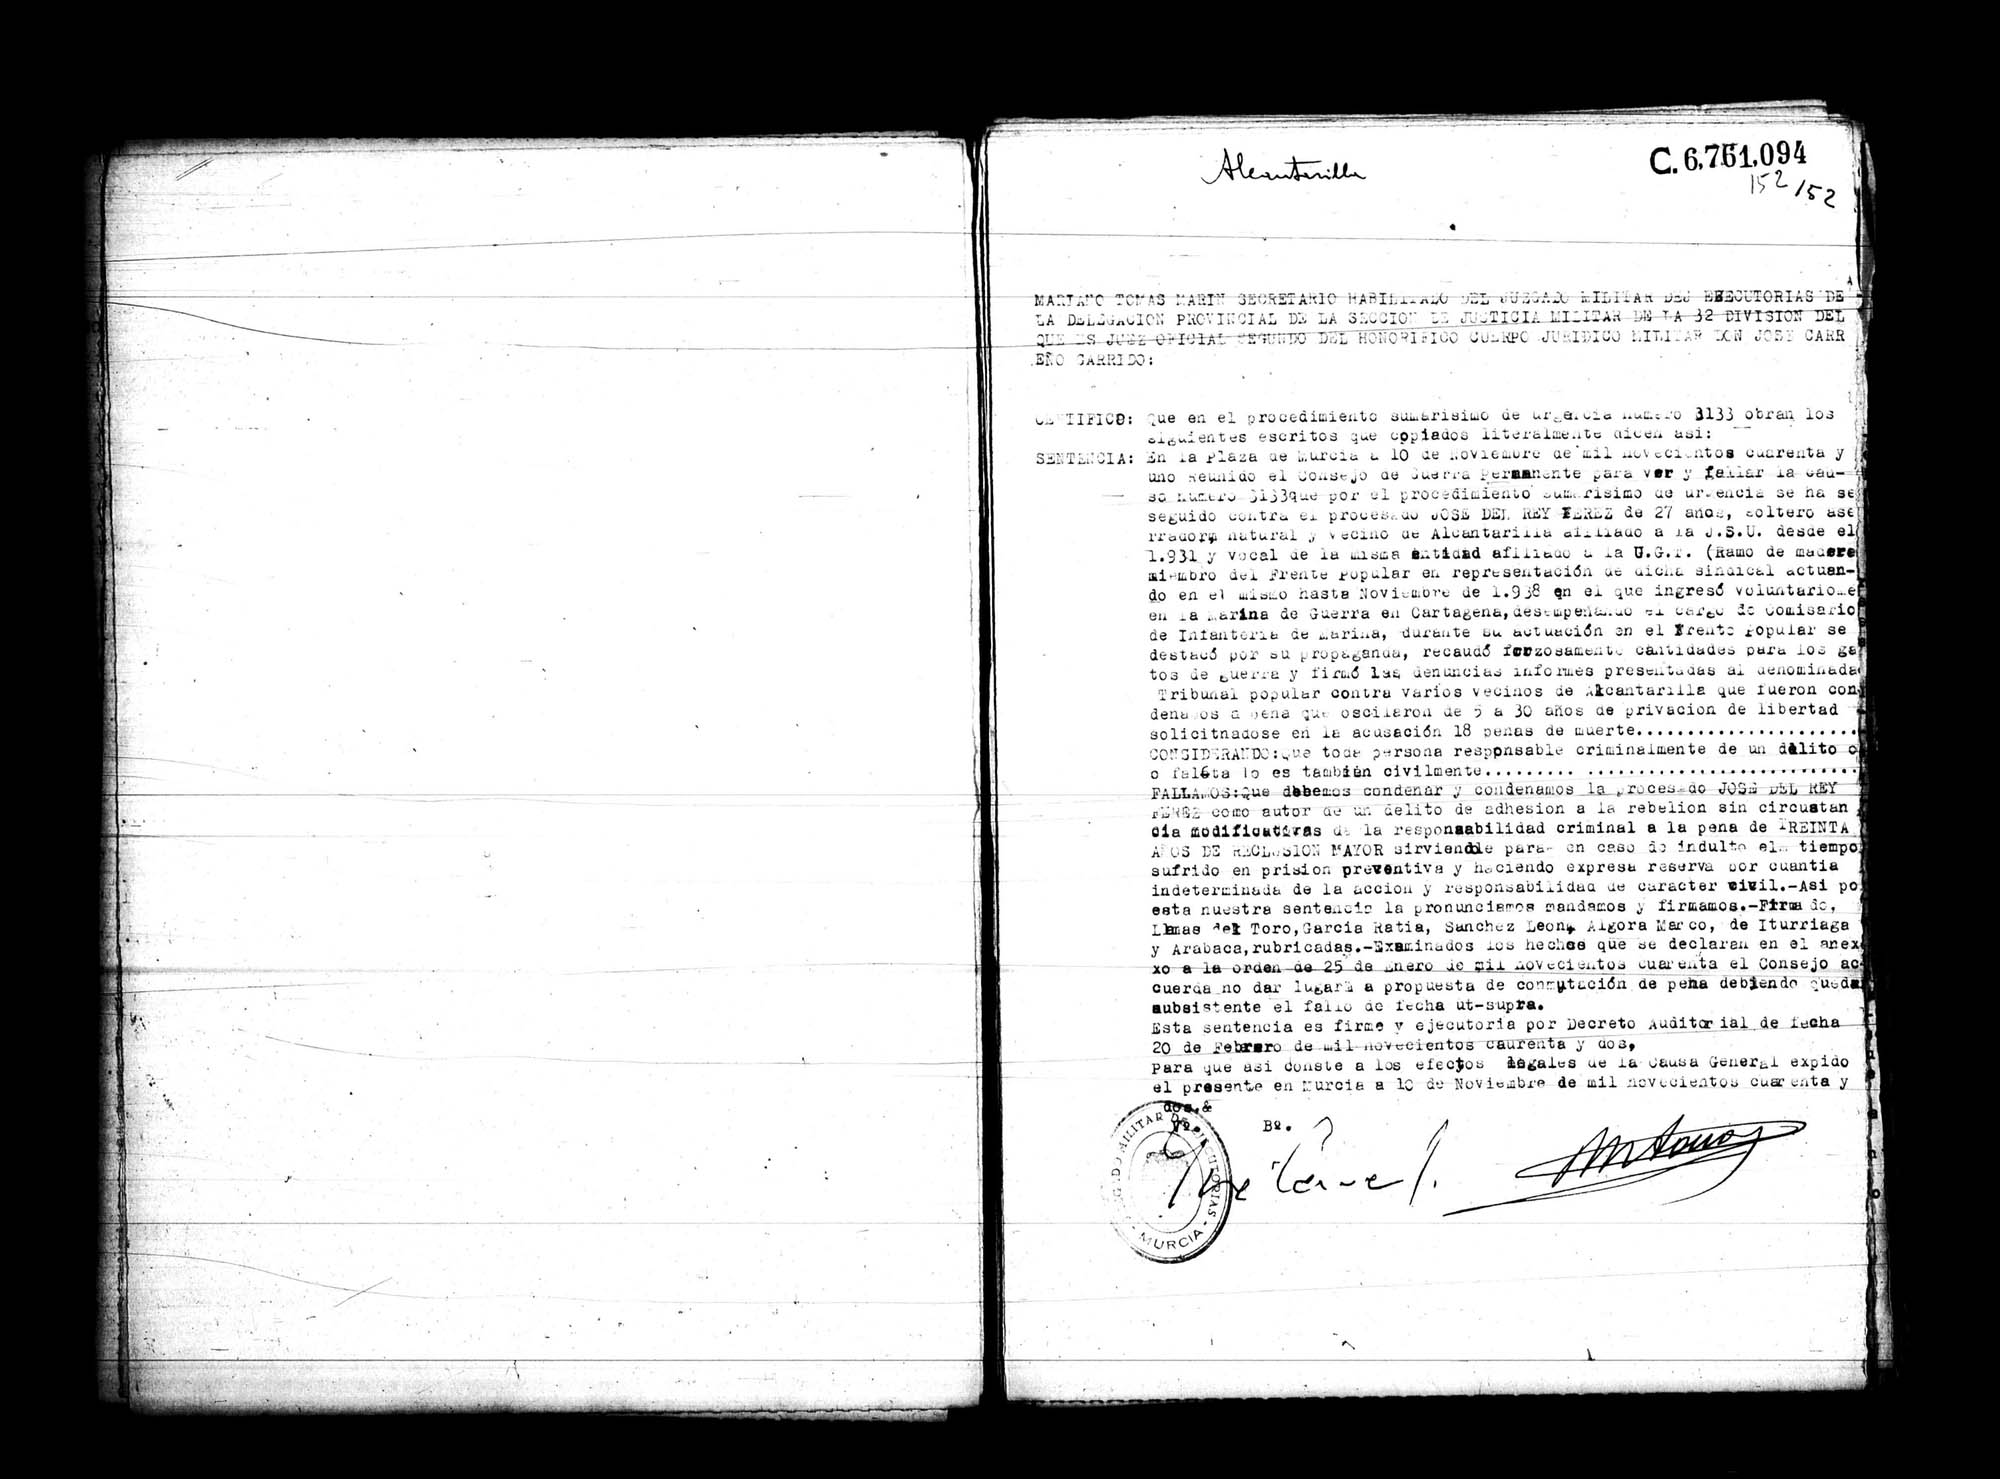 Certificado de la sentencia pronunciada contra José del Rey Férez, causa 3133, el 10 de noviembre de 1941 en Murcia.